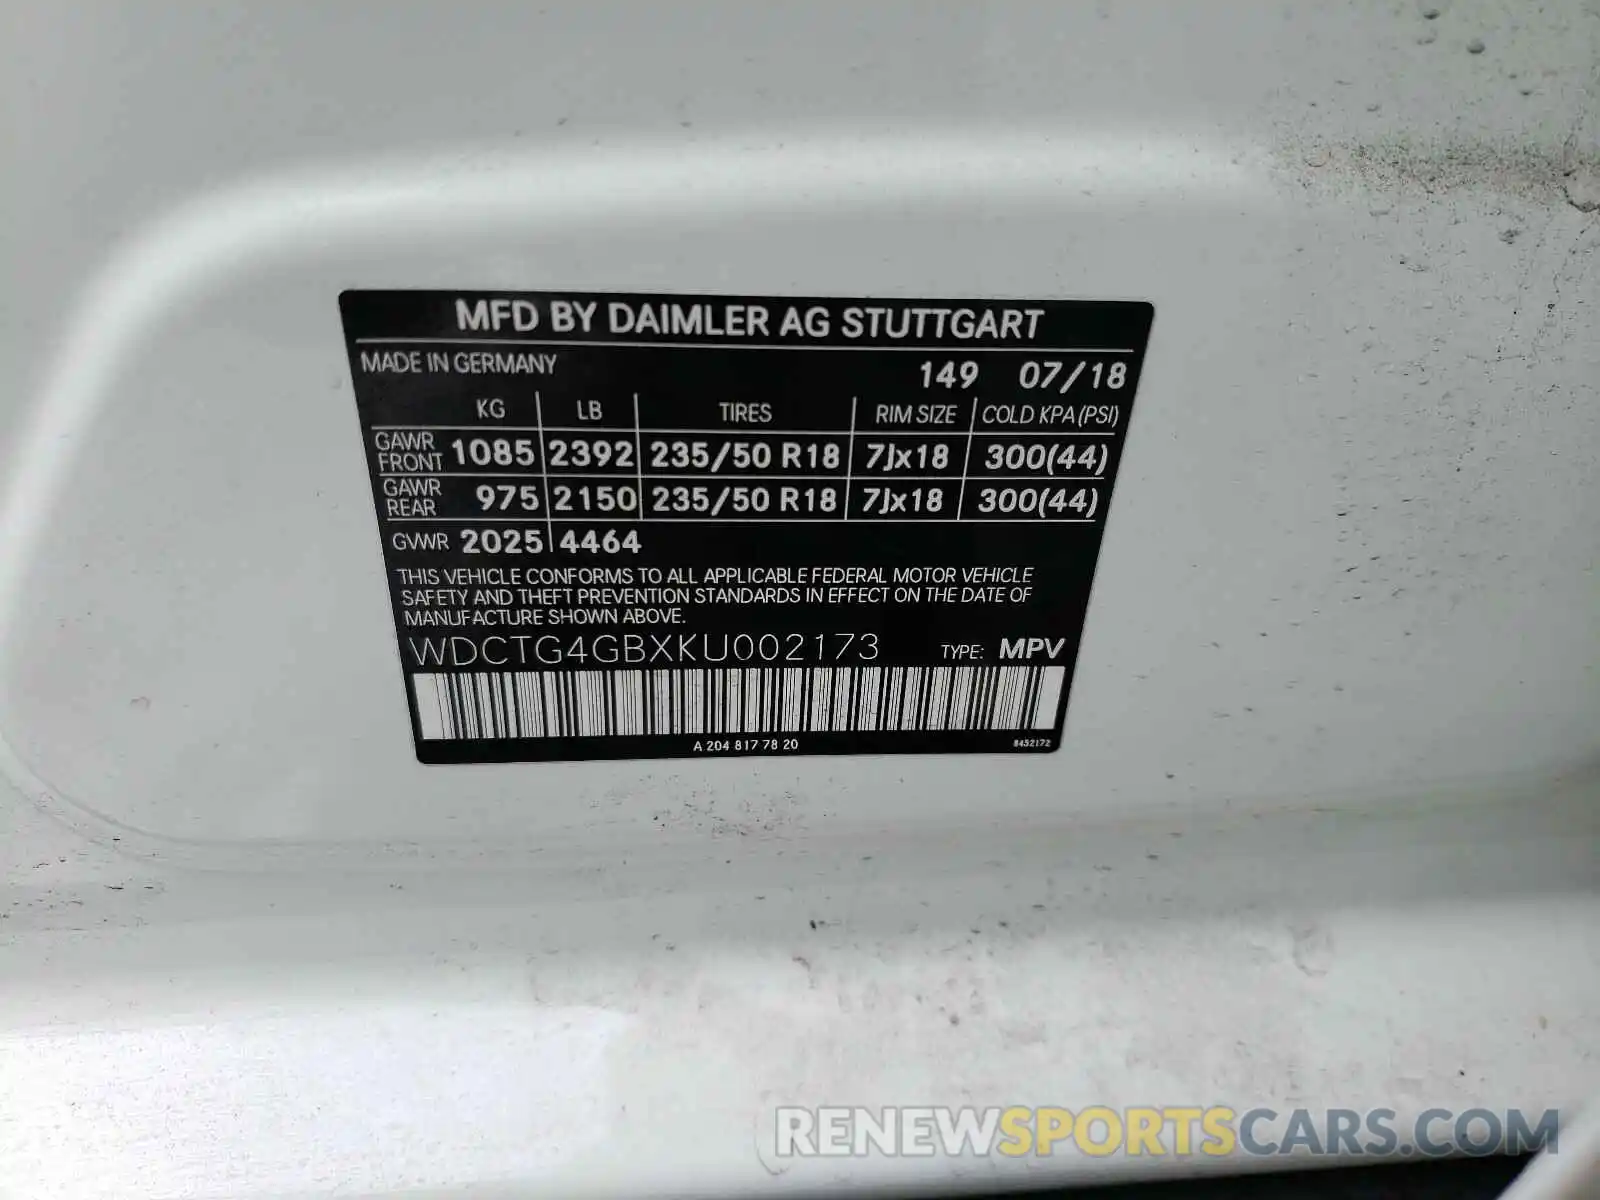 10 Photograph of a damaged car WDCTG4GBXKU002173 MERCEDES-BENZ G CLASS 2019